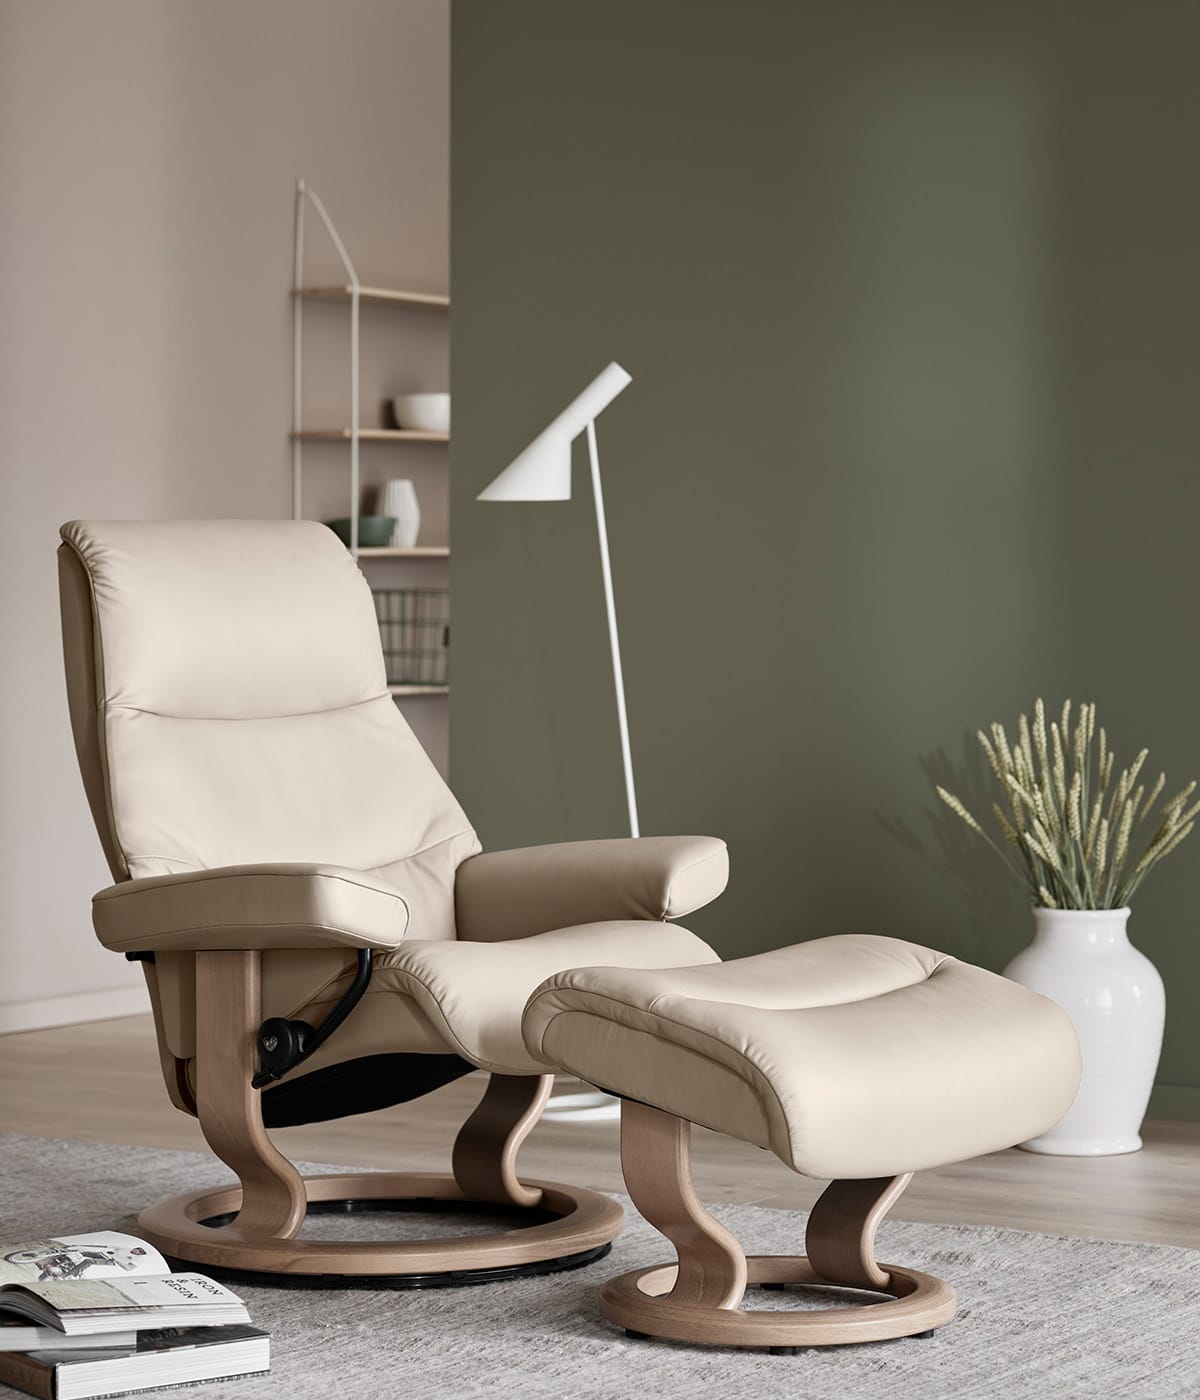 Helle Farben und Möbel – wie hier der Stressless View Relaxsessel in Beige – wirken einladend und gesellig